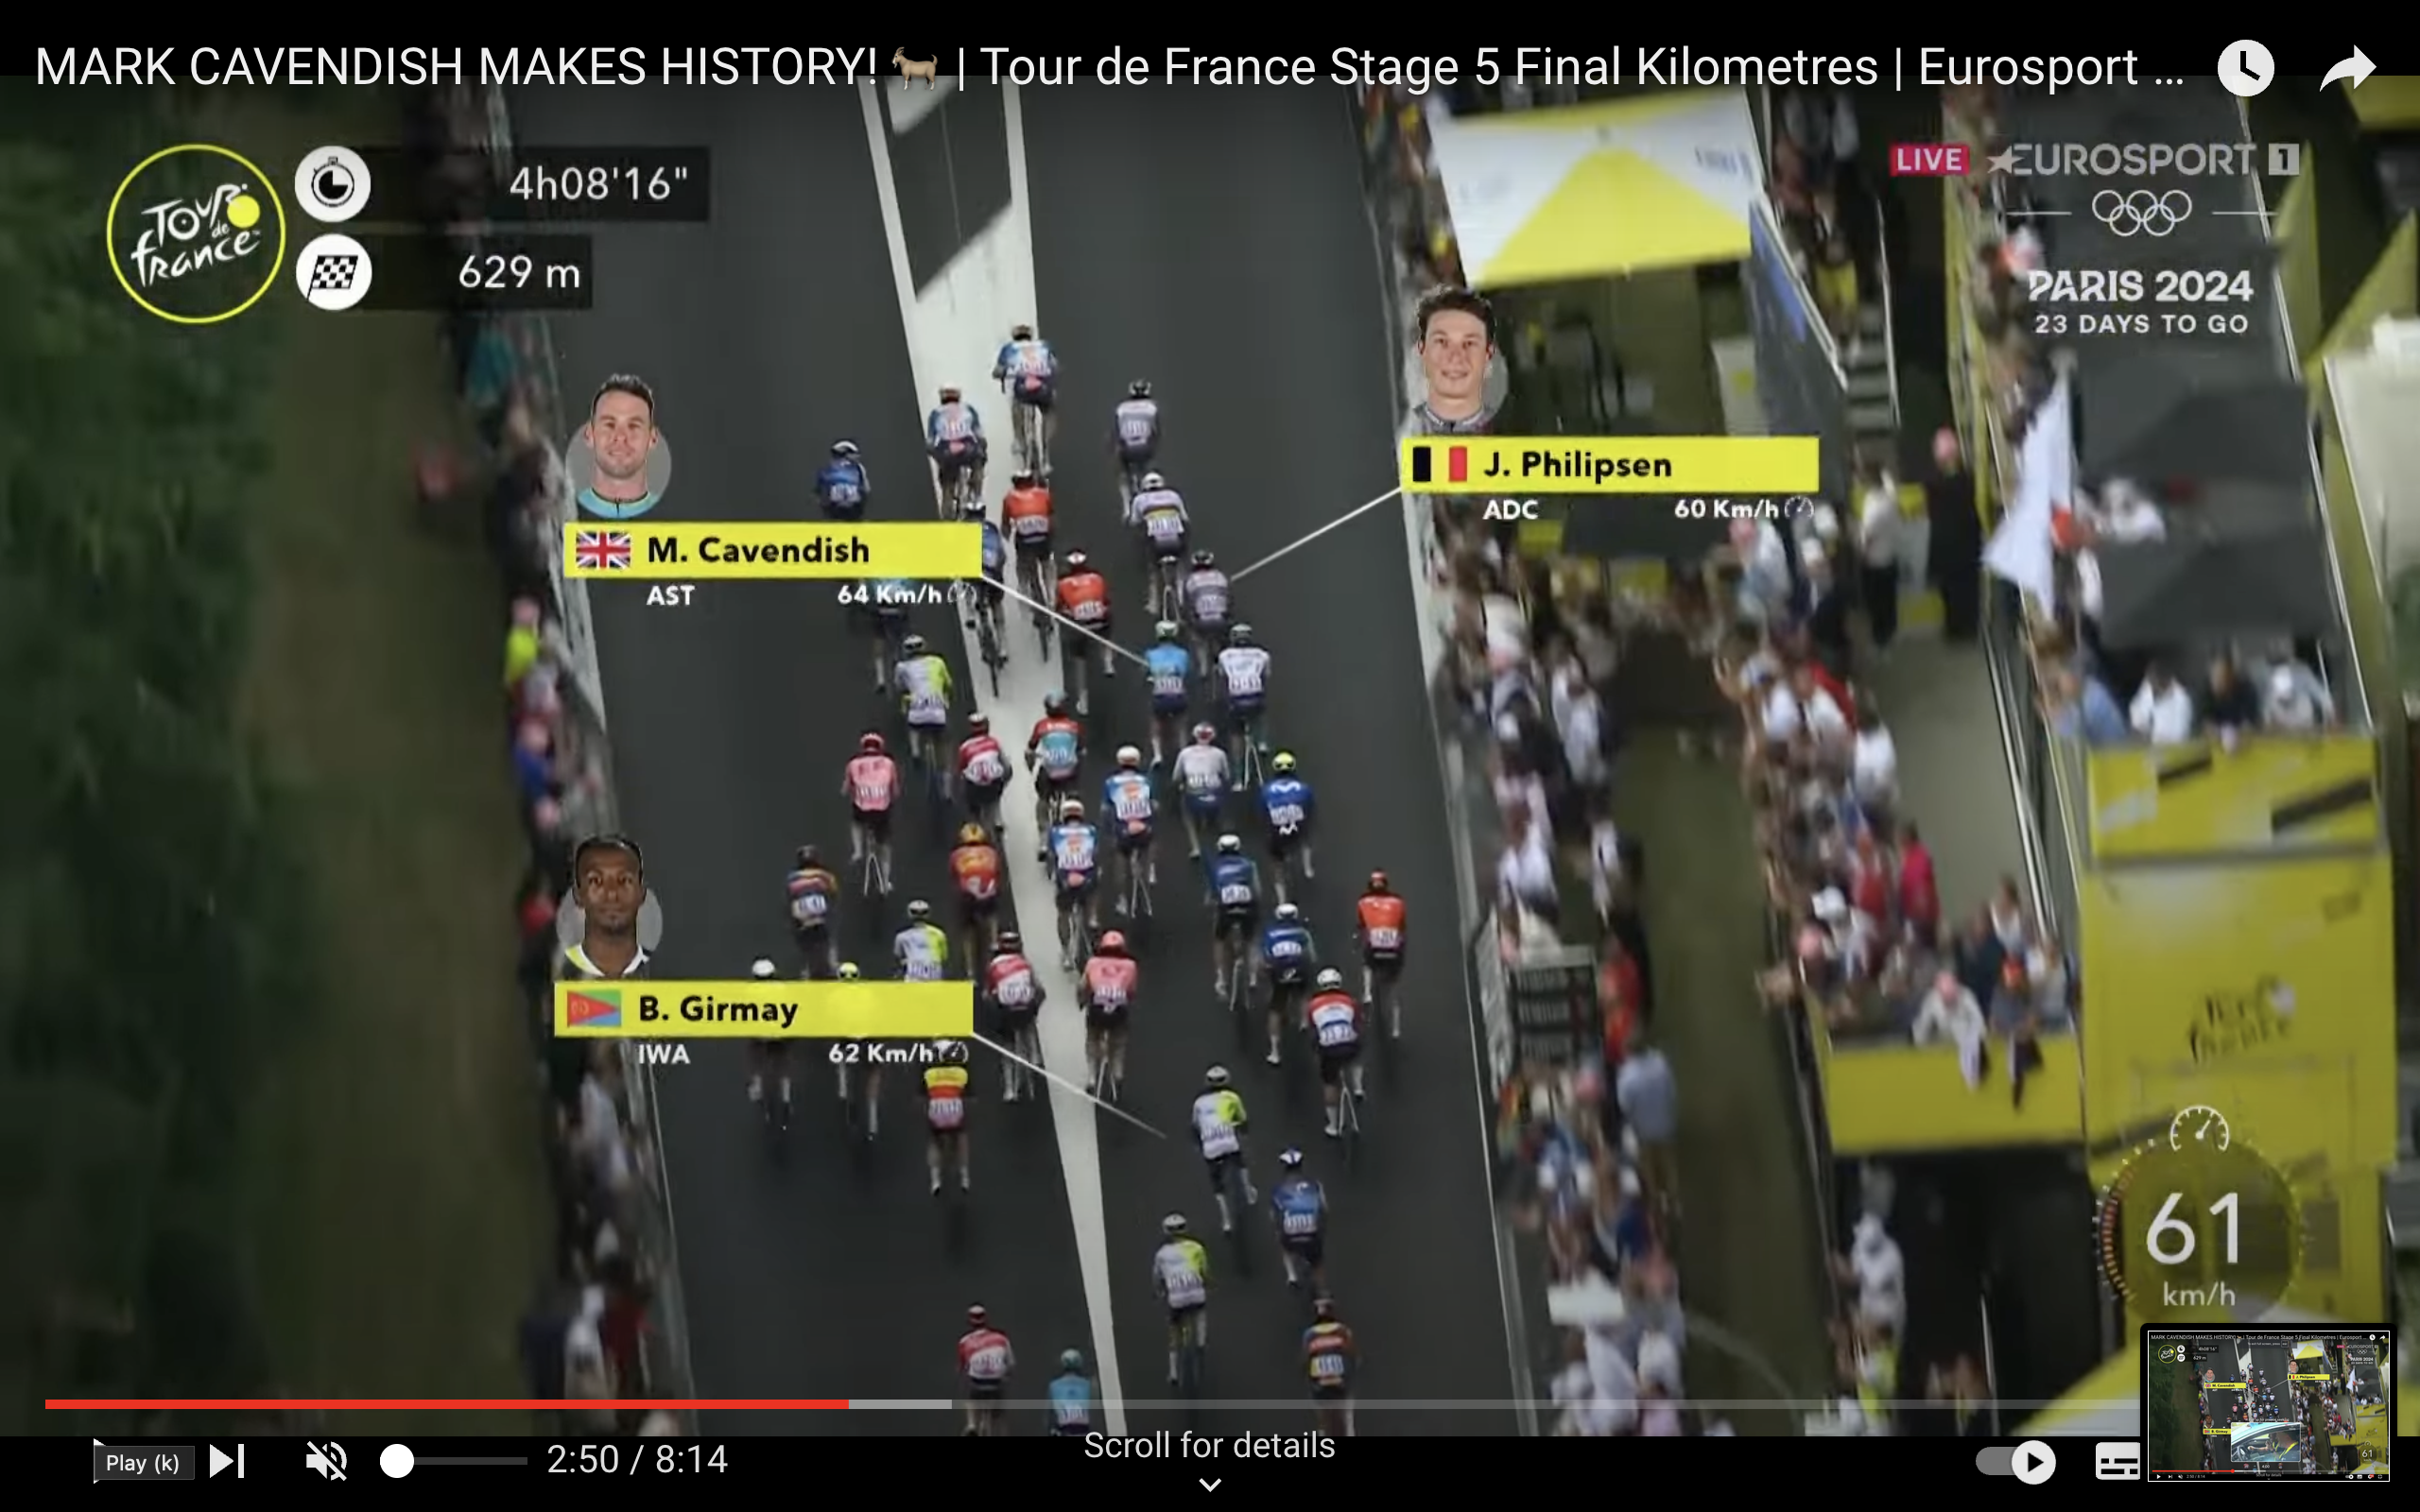 Captures d'écran du dernier kilomètre de l'étape 5 lorsque Mark Cavendish a remporté sa 35e victoire d'étape du Tour de France, un record